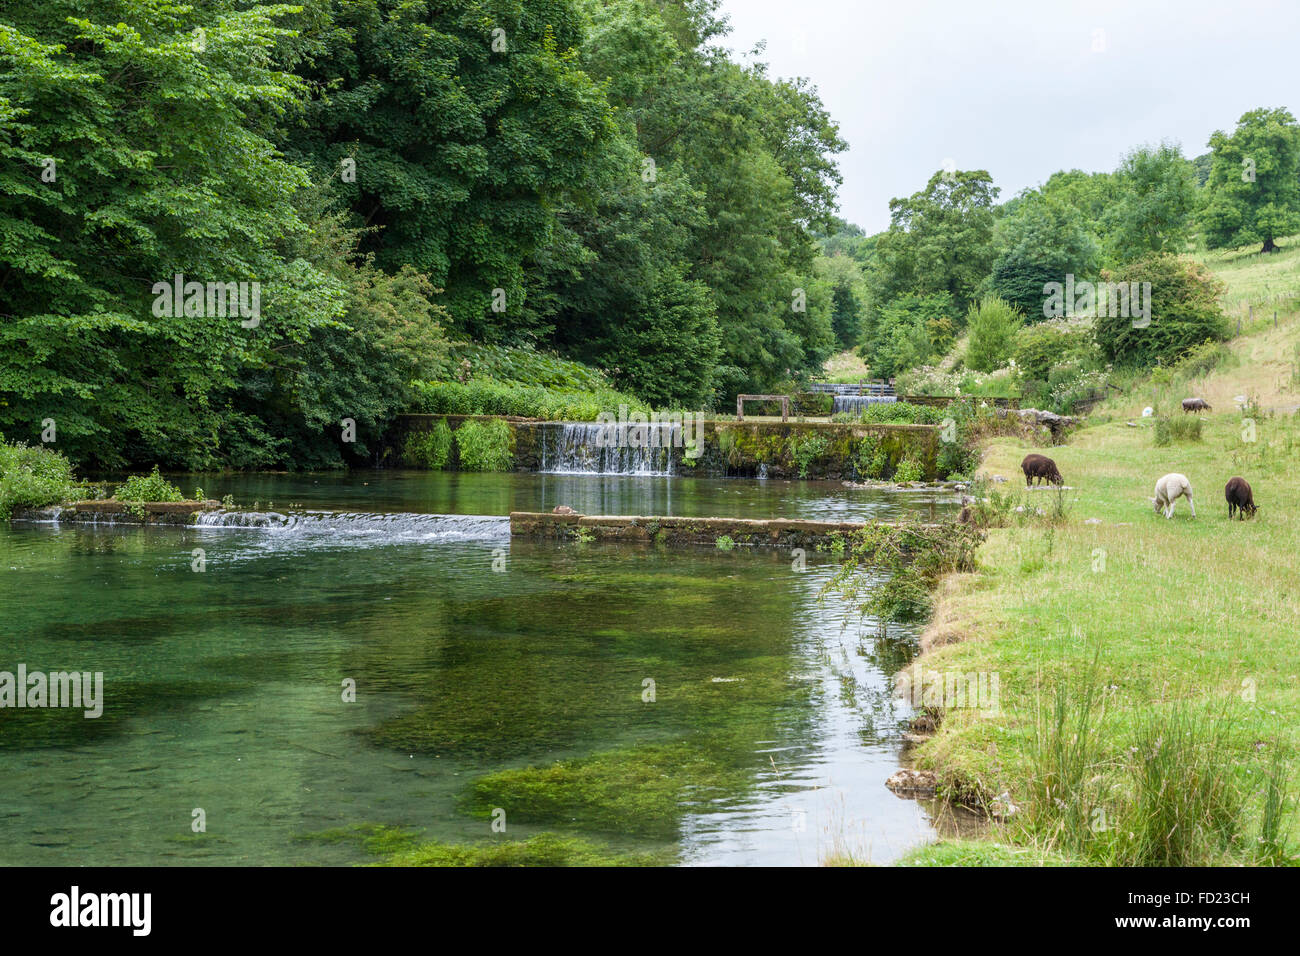 The River Lathkill in Lathkill Dale, Derbyshire, Peak District, England, UK Stock Photo